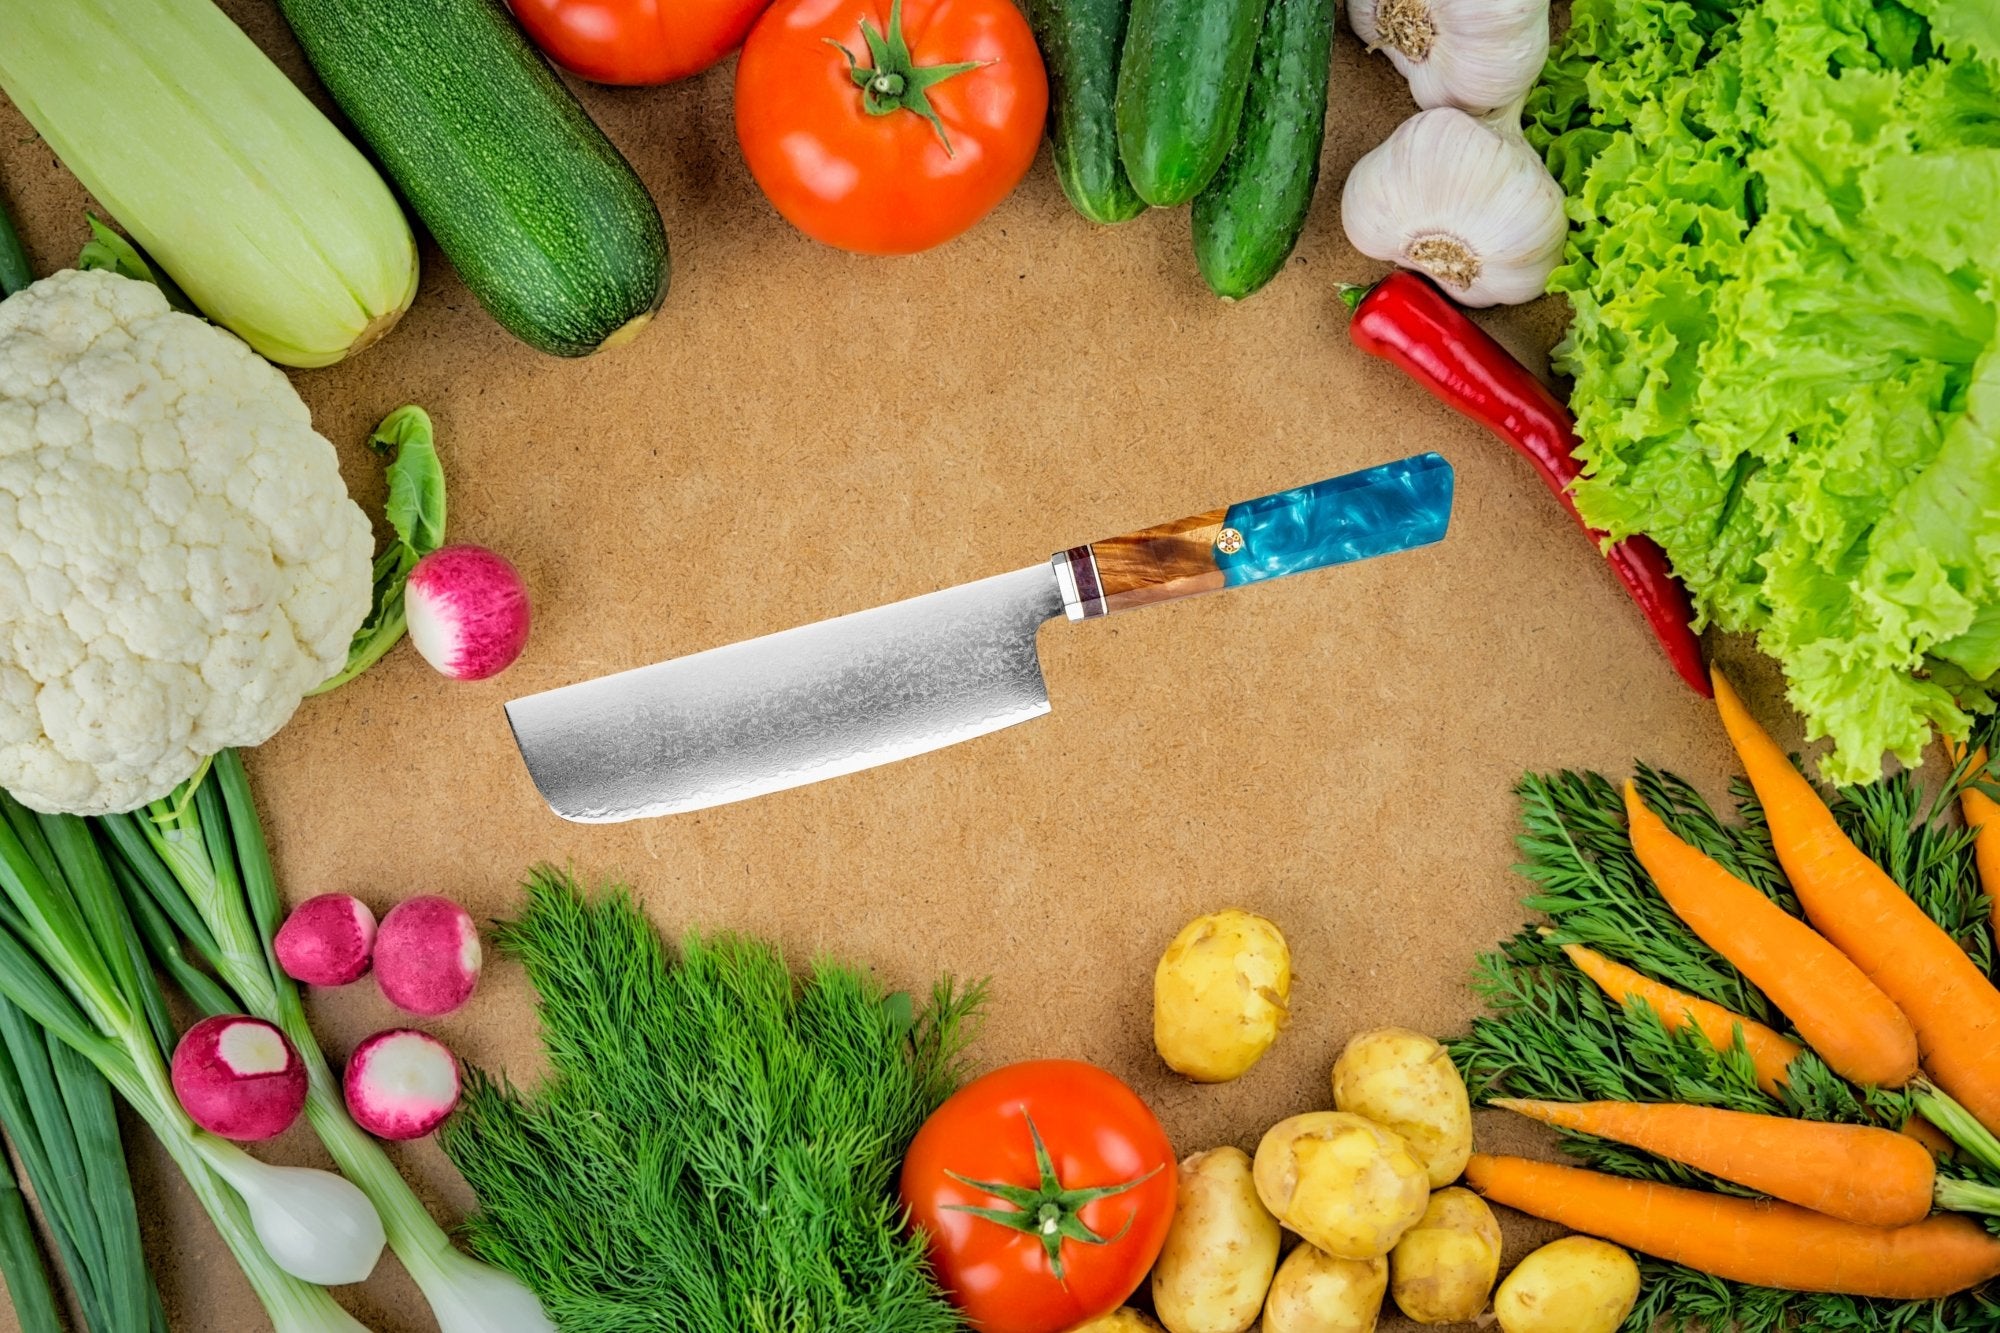 Tagliare le verdure: qual è il miglior coltello vegetale? – santokuknives